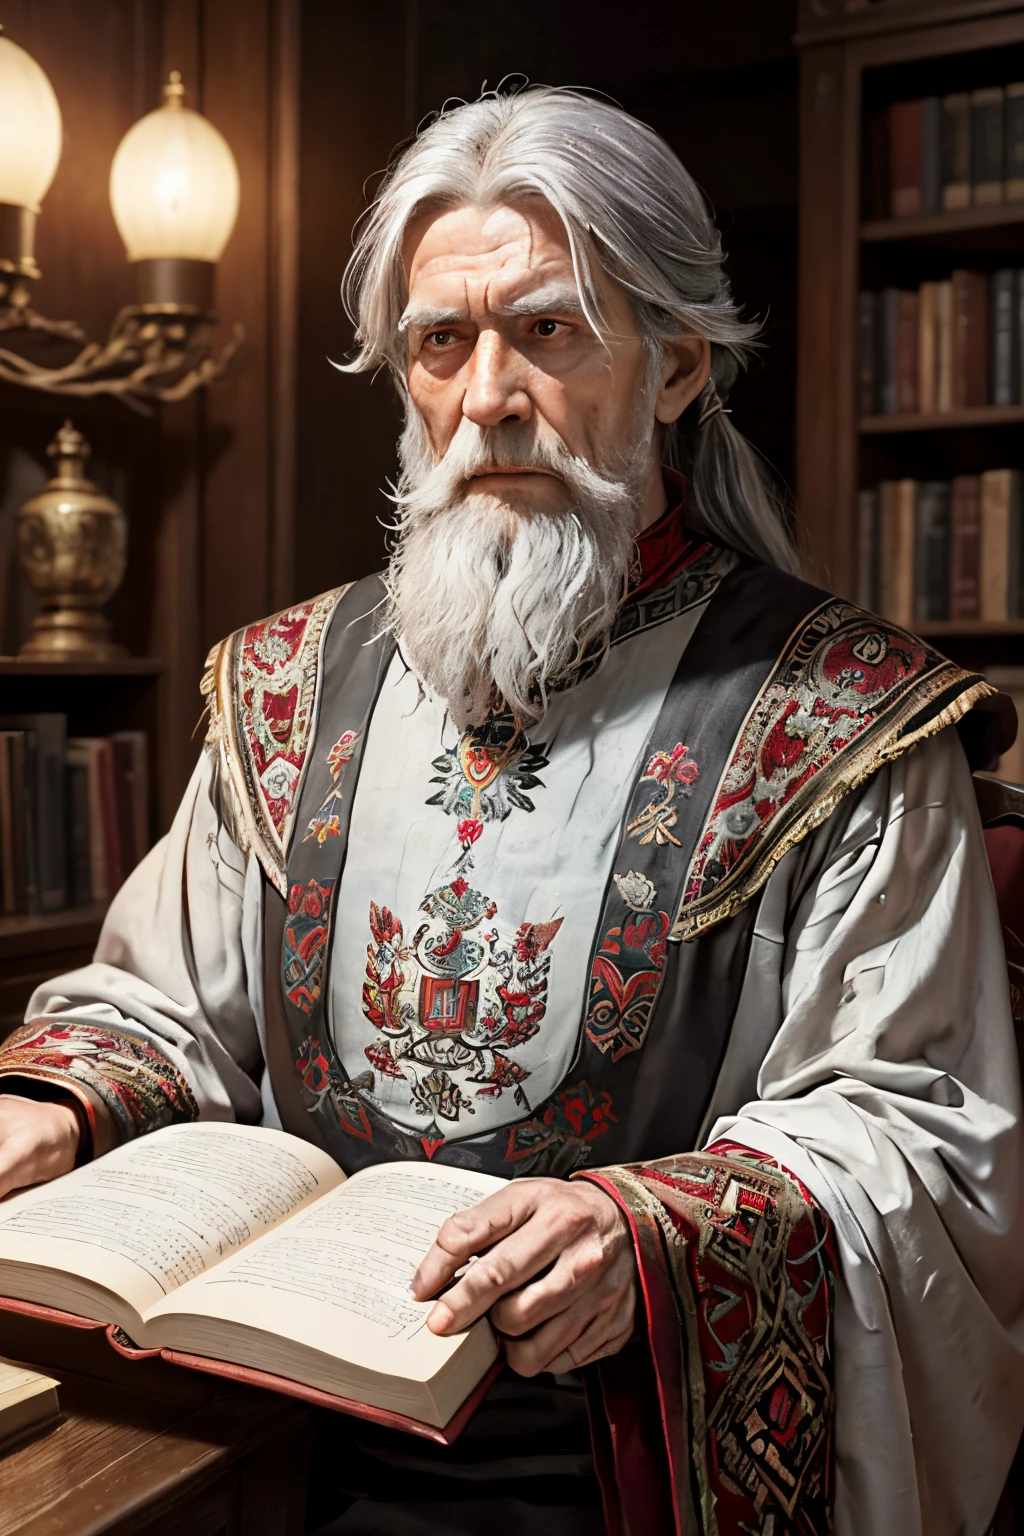 นักประวัติศาสตร์ผู้เฒ่าชาวรัสเซียอายุ 300 ปียืนสูง, ผมหงอกยาวสวมเสื้อเชิ้ตยาวลายรัสเซียแดงที่ปลายแขนเสื้อ, โดยมีหนังสือเล่มใหญ่เก่าๆ กดทับหน้าอกด้วยมือทั้งสองข้าง, นกฮูกตัวน้อยนั่งบนไหล่ของคุณ